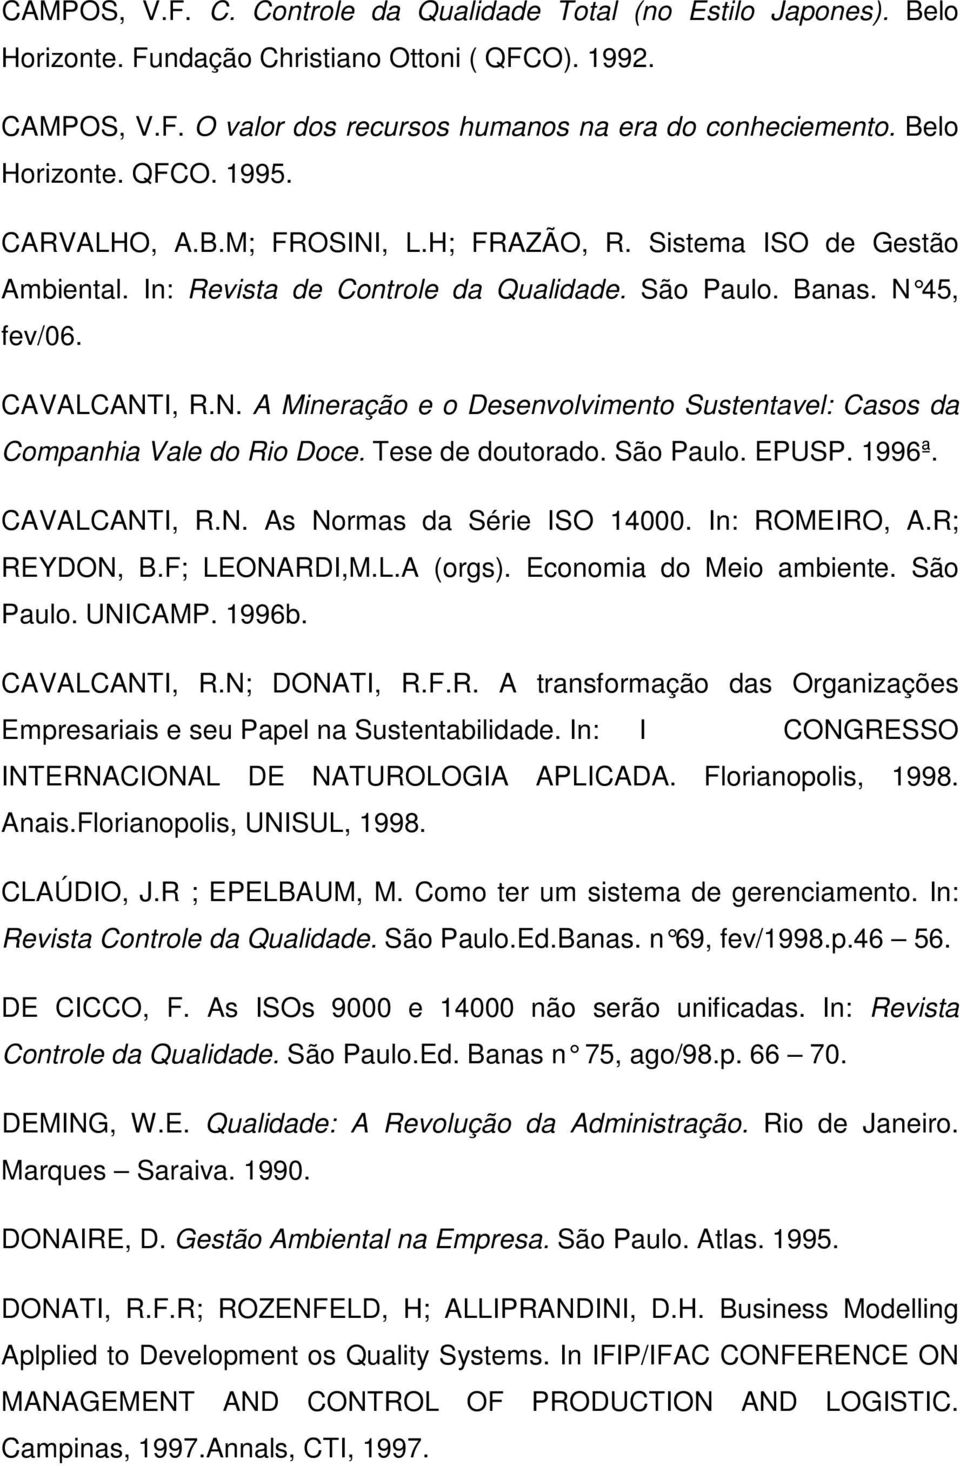 Tese de doutorado. São Paulo. EPUSP. 1996ª. CAVALCANTI, R.N. As Normas da Série ISO 14000. In: ROMEIRO, A.R; REYDON, B.F; LEONARDI,M.L.A (orgs). Economia do Meio ambiente. São Paulo. UNICAMP. 1996b.